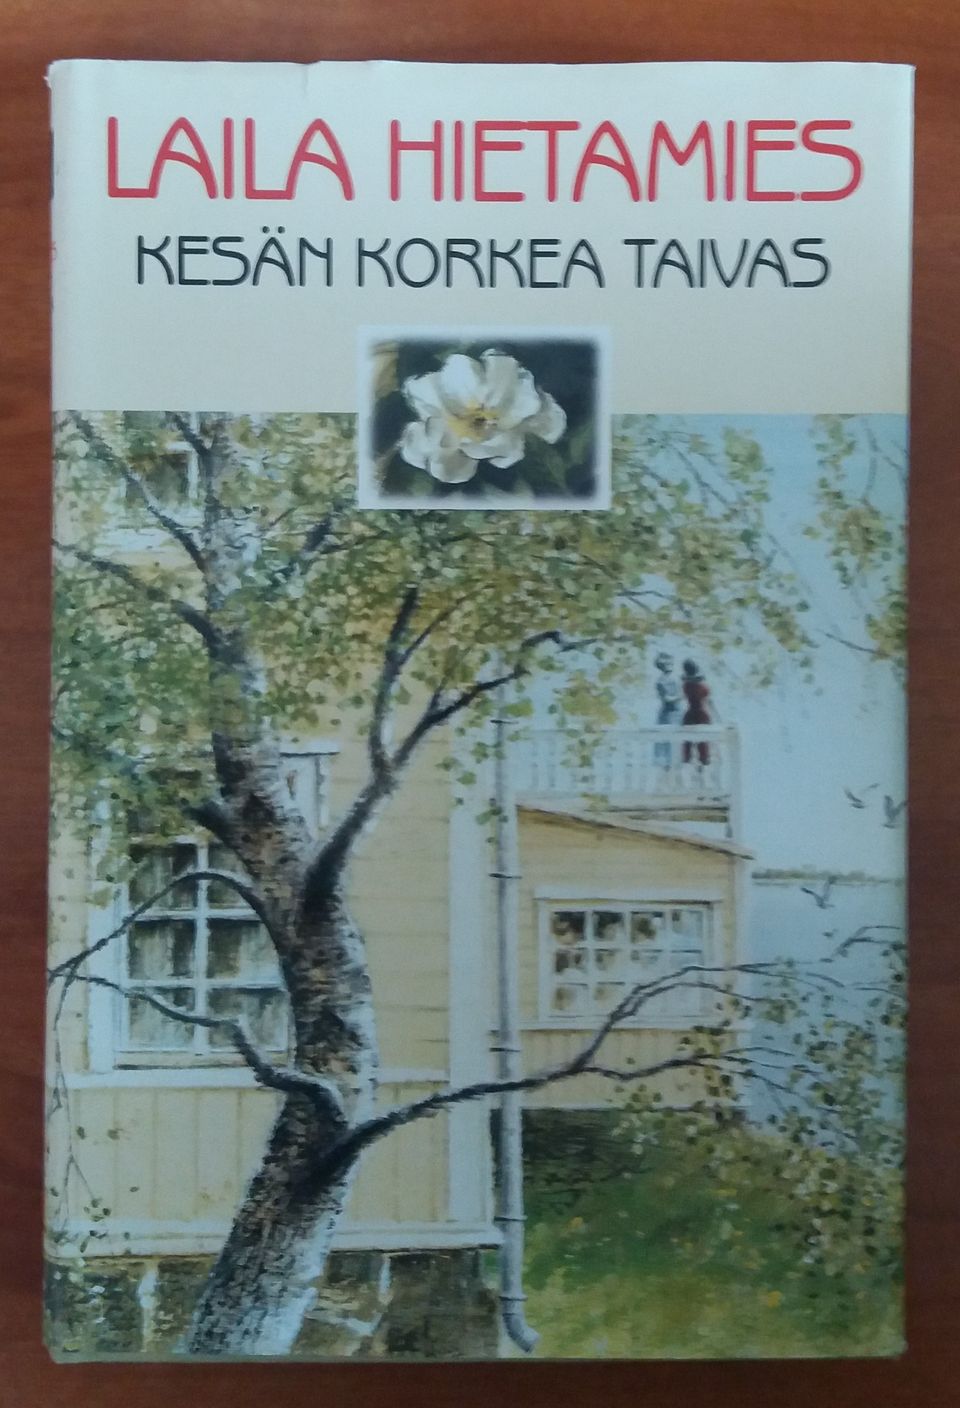 Laila Hietamies KESÄN KORKEA TAIVAS SSKk 2001